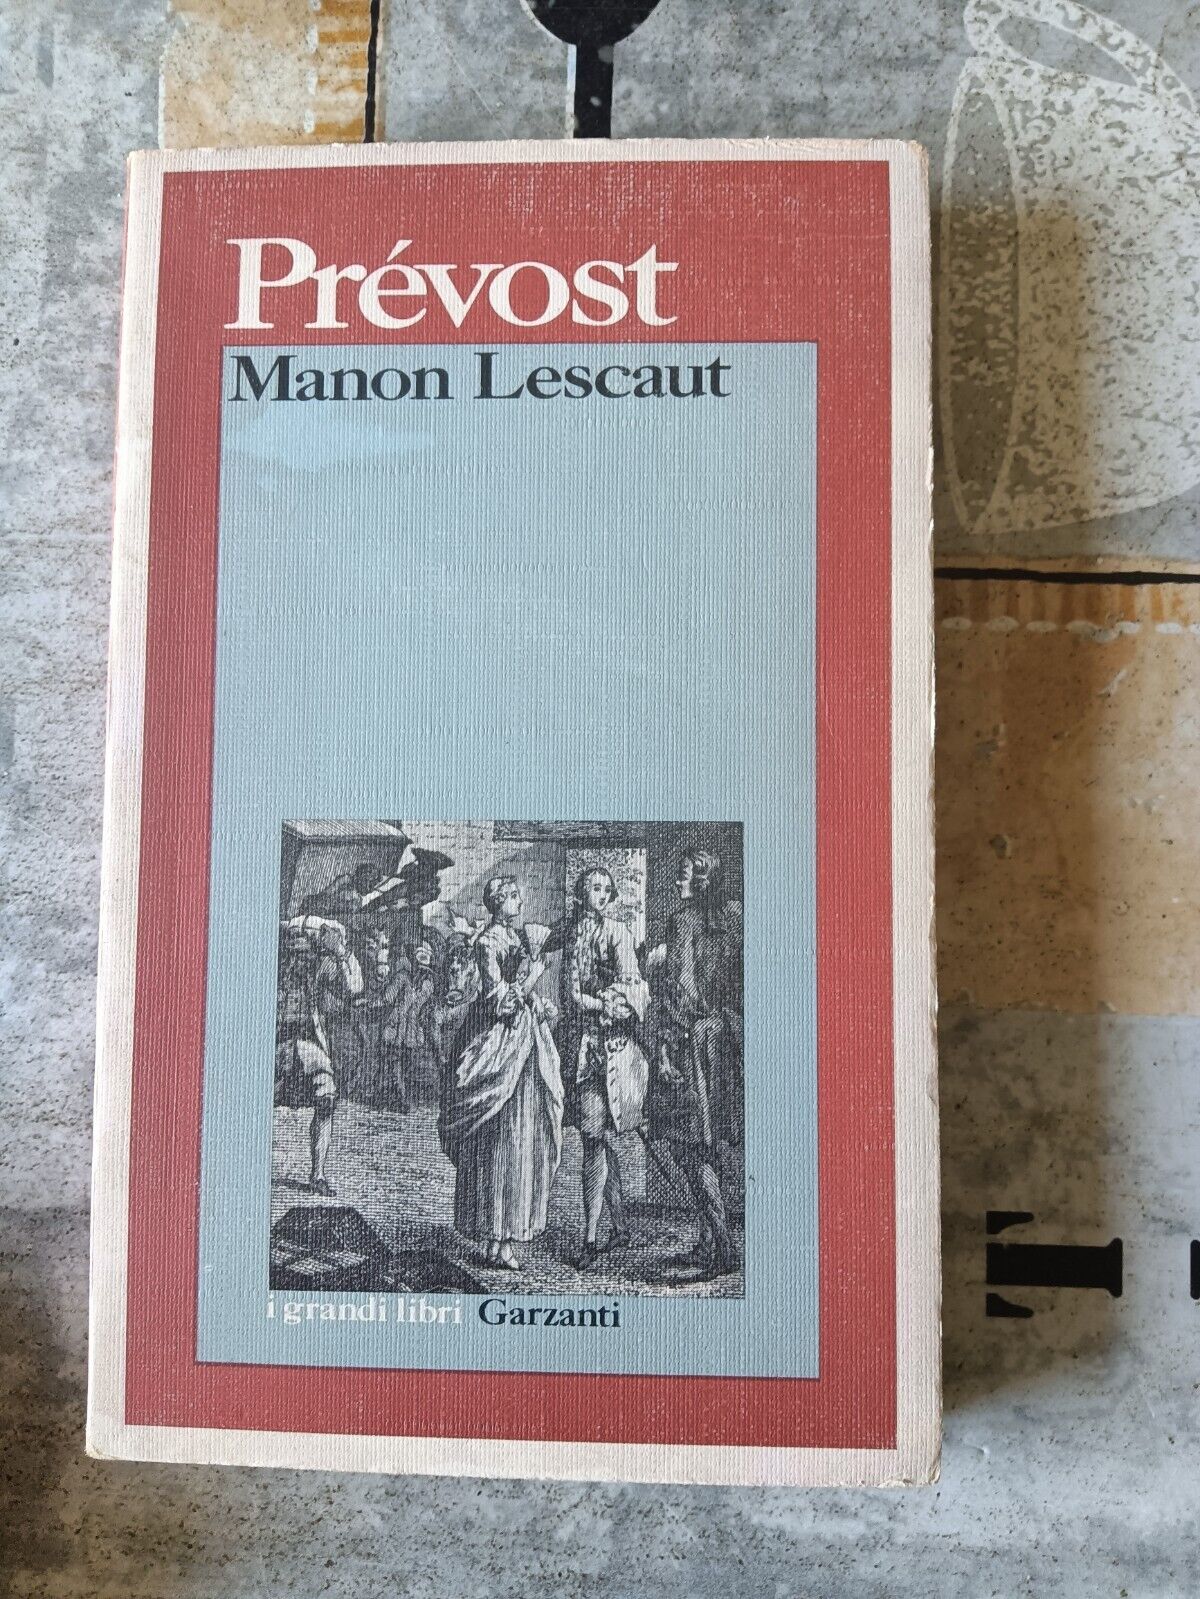 Manon lescaut | Prevost - Garzanti